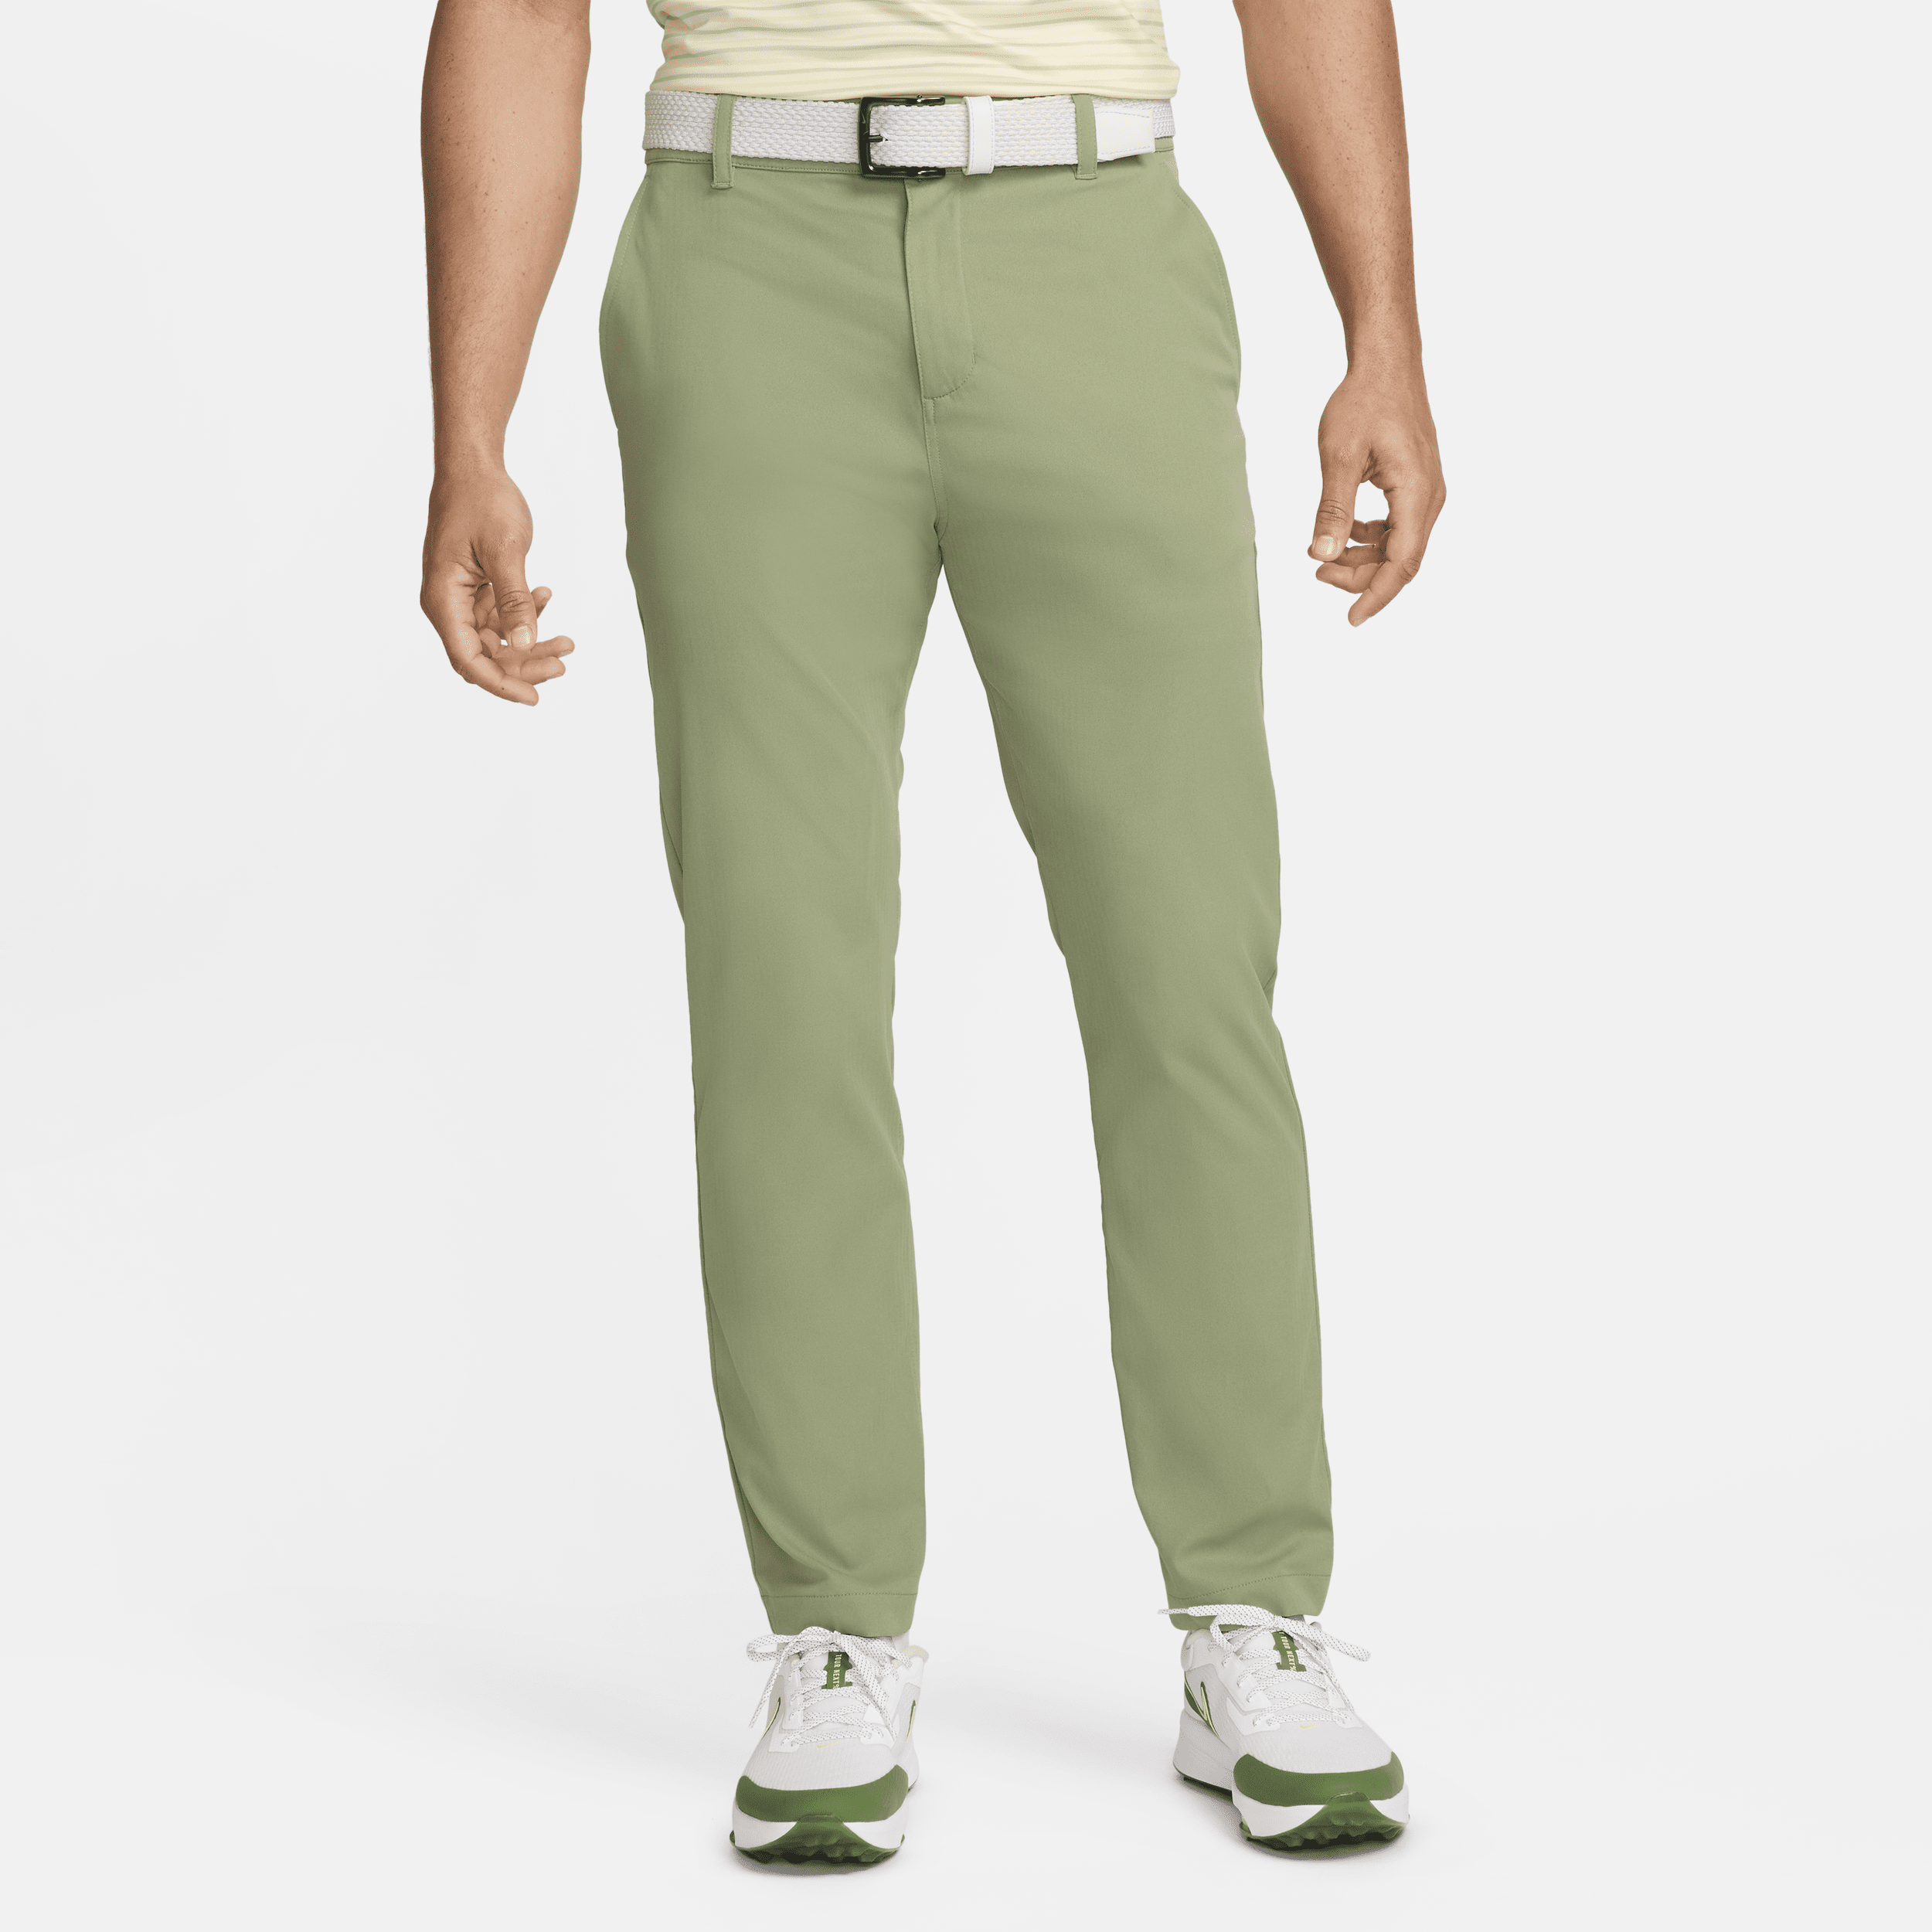 Nike Men's Tour Repel Chino Slim Golf Pants In Green